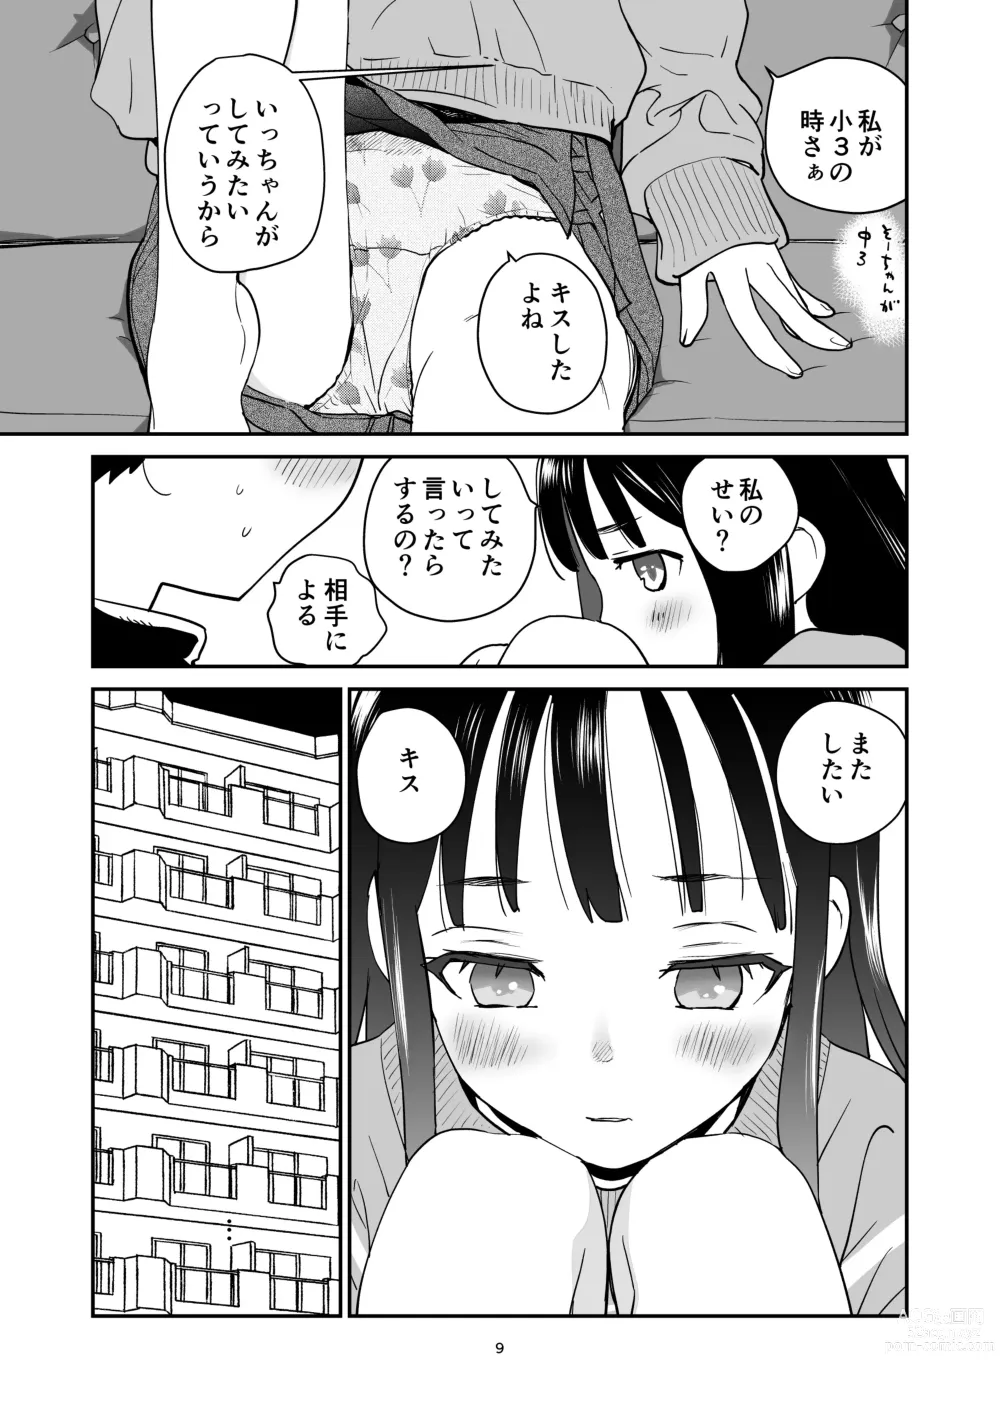 Page 9 of doujinshi ORANGE